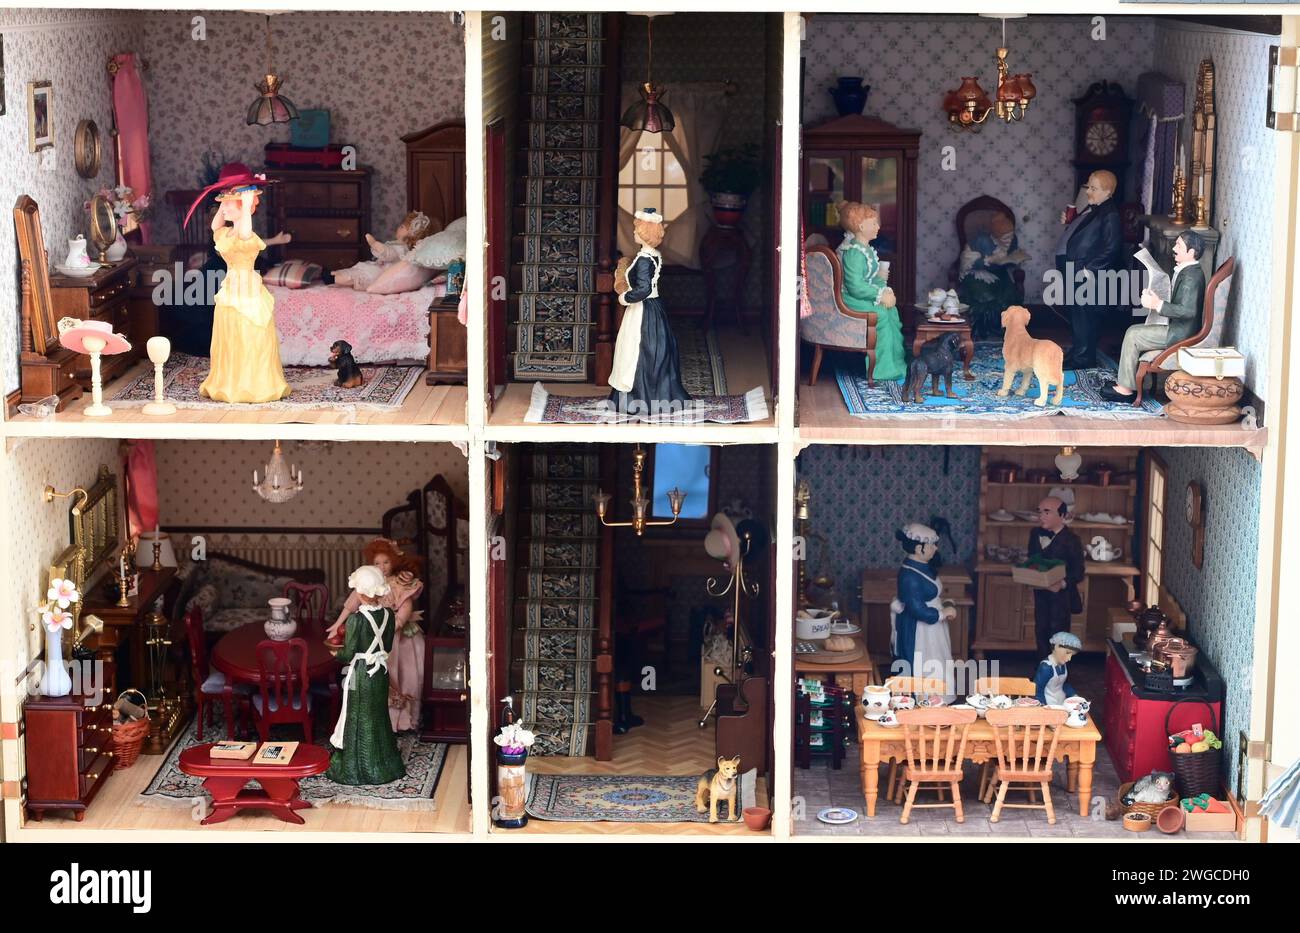 El interior de una casa de muñecas inglesas ambientada en la época victoriana. Foto de stock